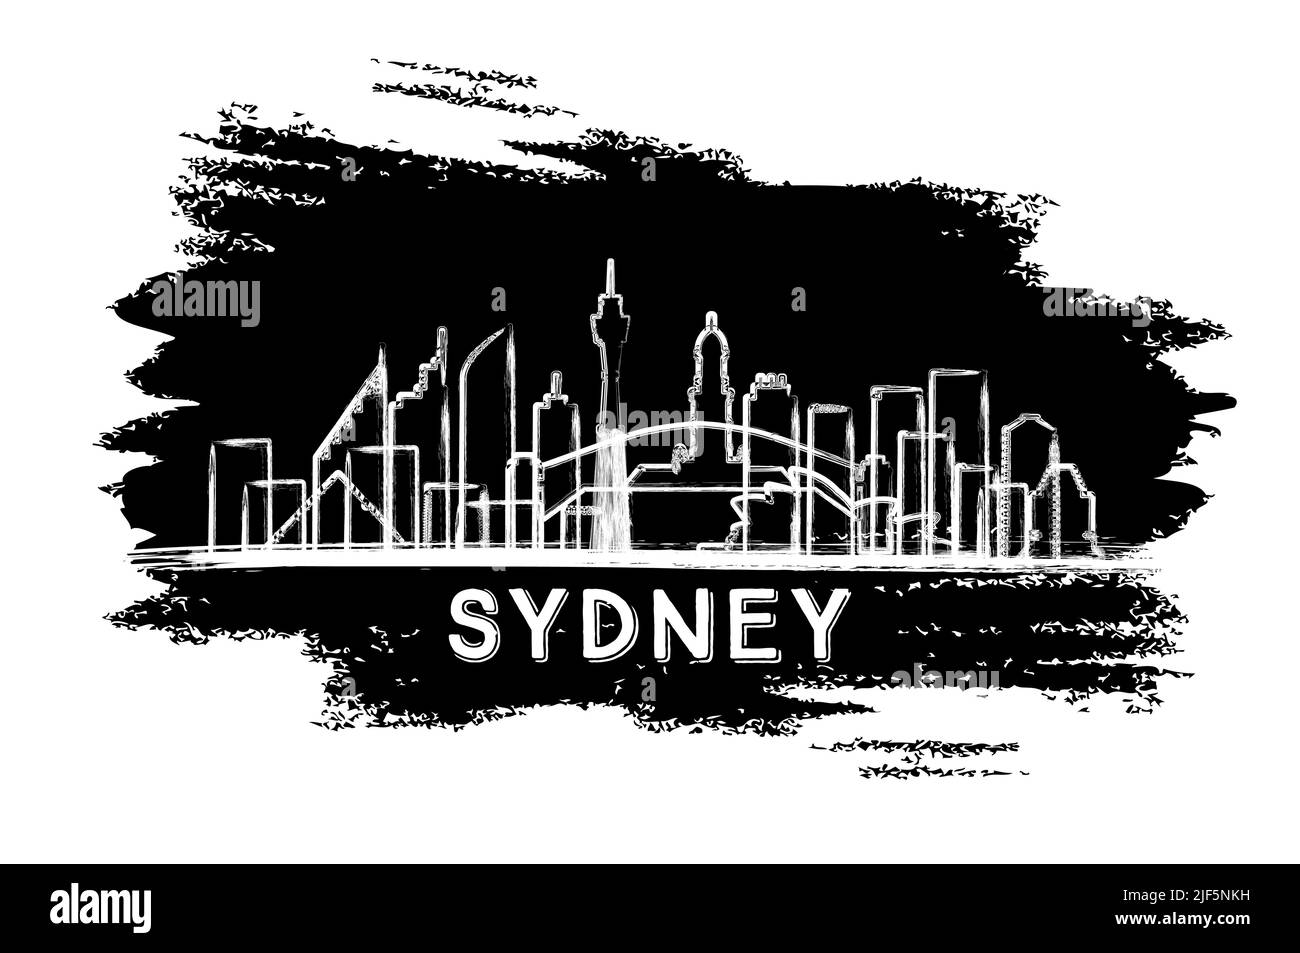 Sydney Australia City Skyline Silhouette. Handgezeichnete Skizze. Business Travel und Tourismus Konzept mit moderner Architektur. Vektorgrafik. Stock Vektor